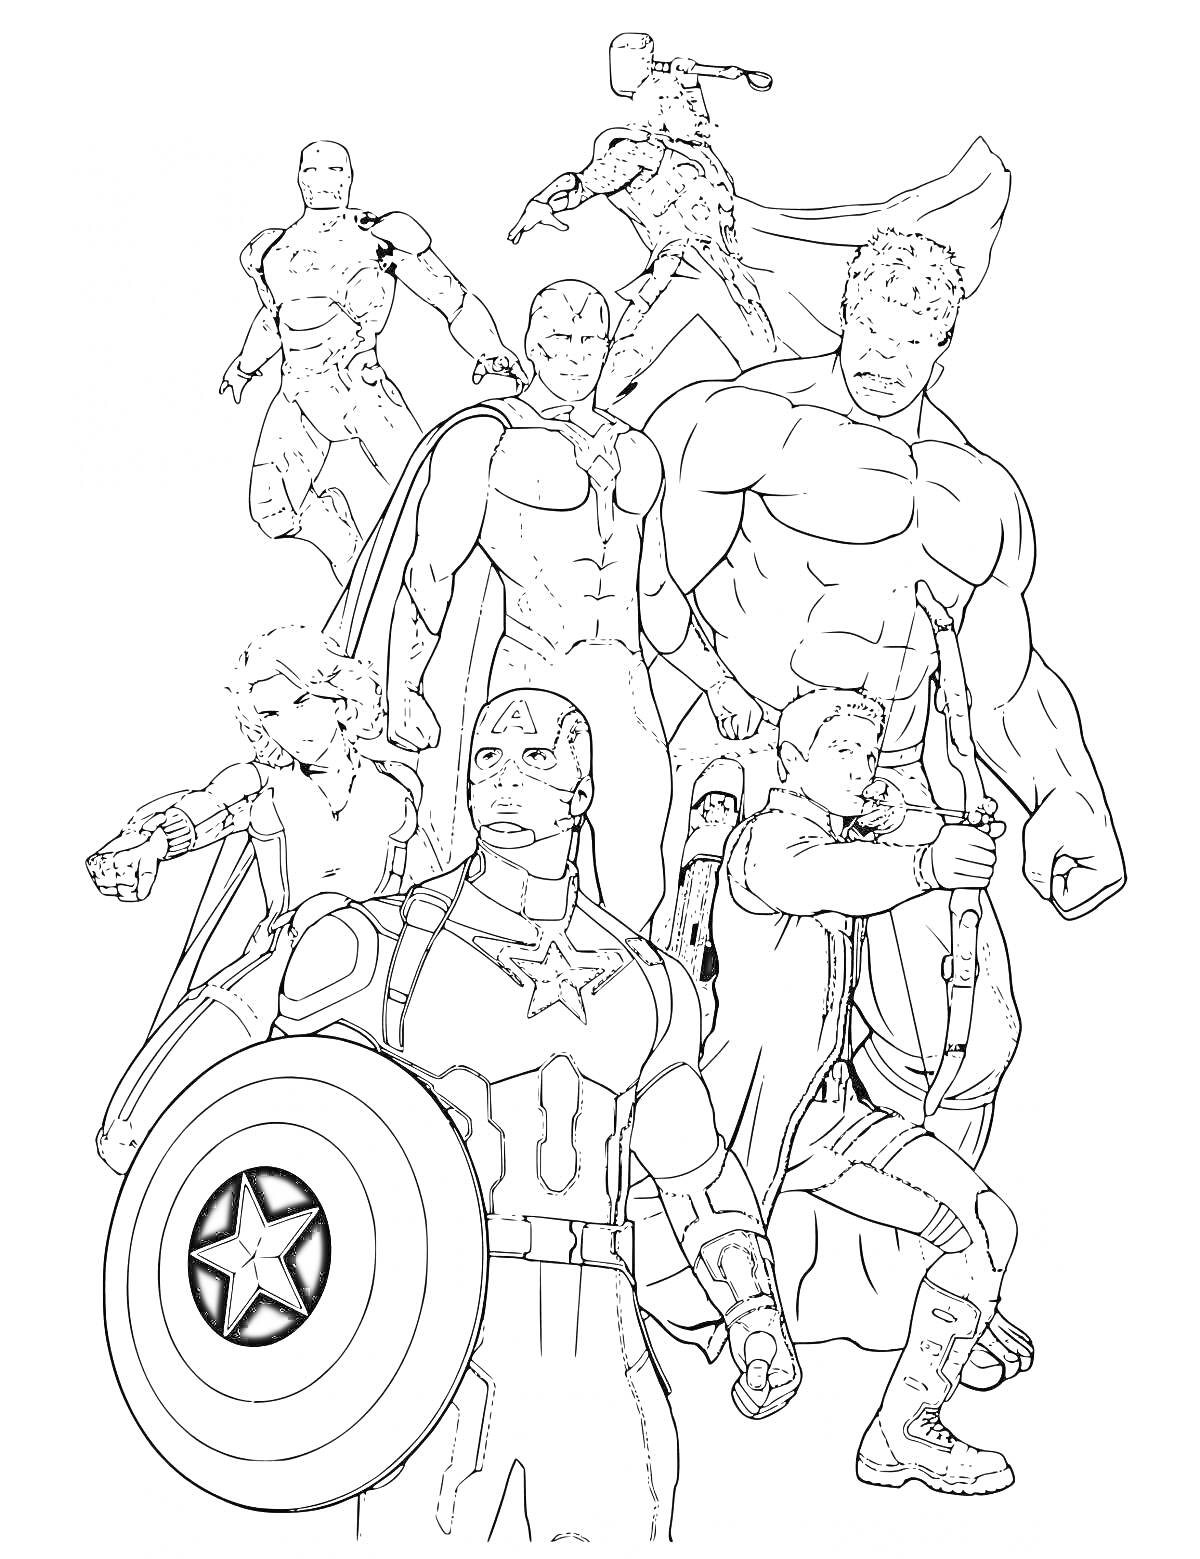 Раскраска Команда Мстителей - Капитан Америка с щитом, Тор с молотом, Халк, Соколиный Глаз с луком, Железный Человек, Вижн